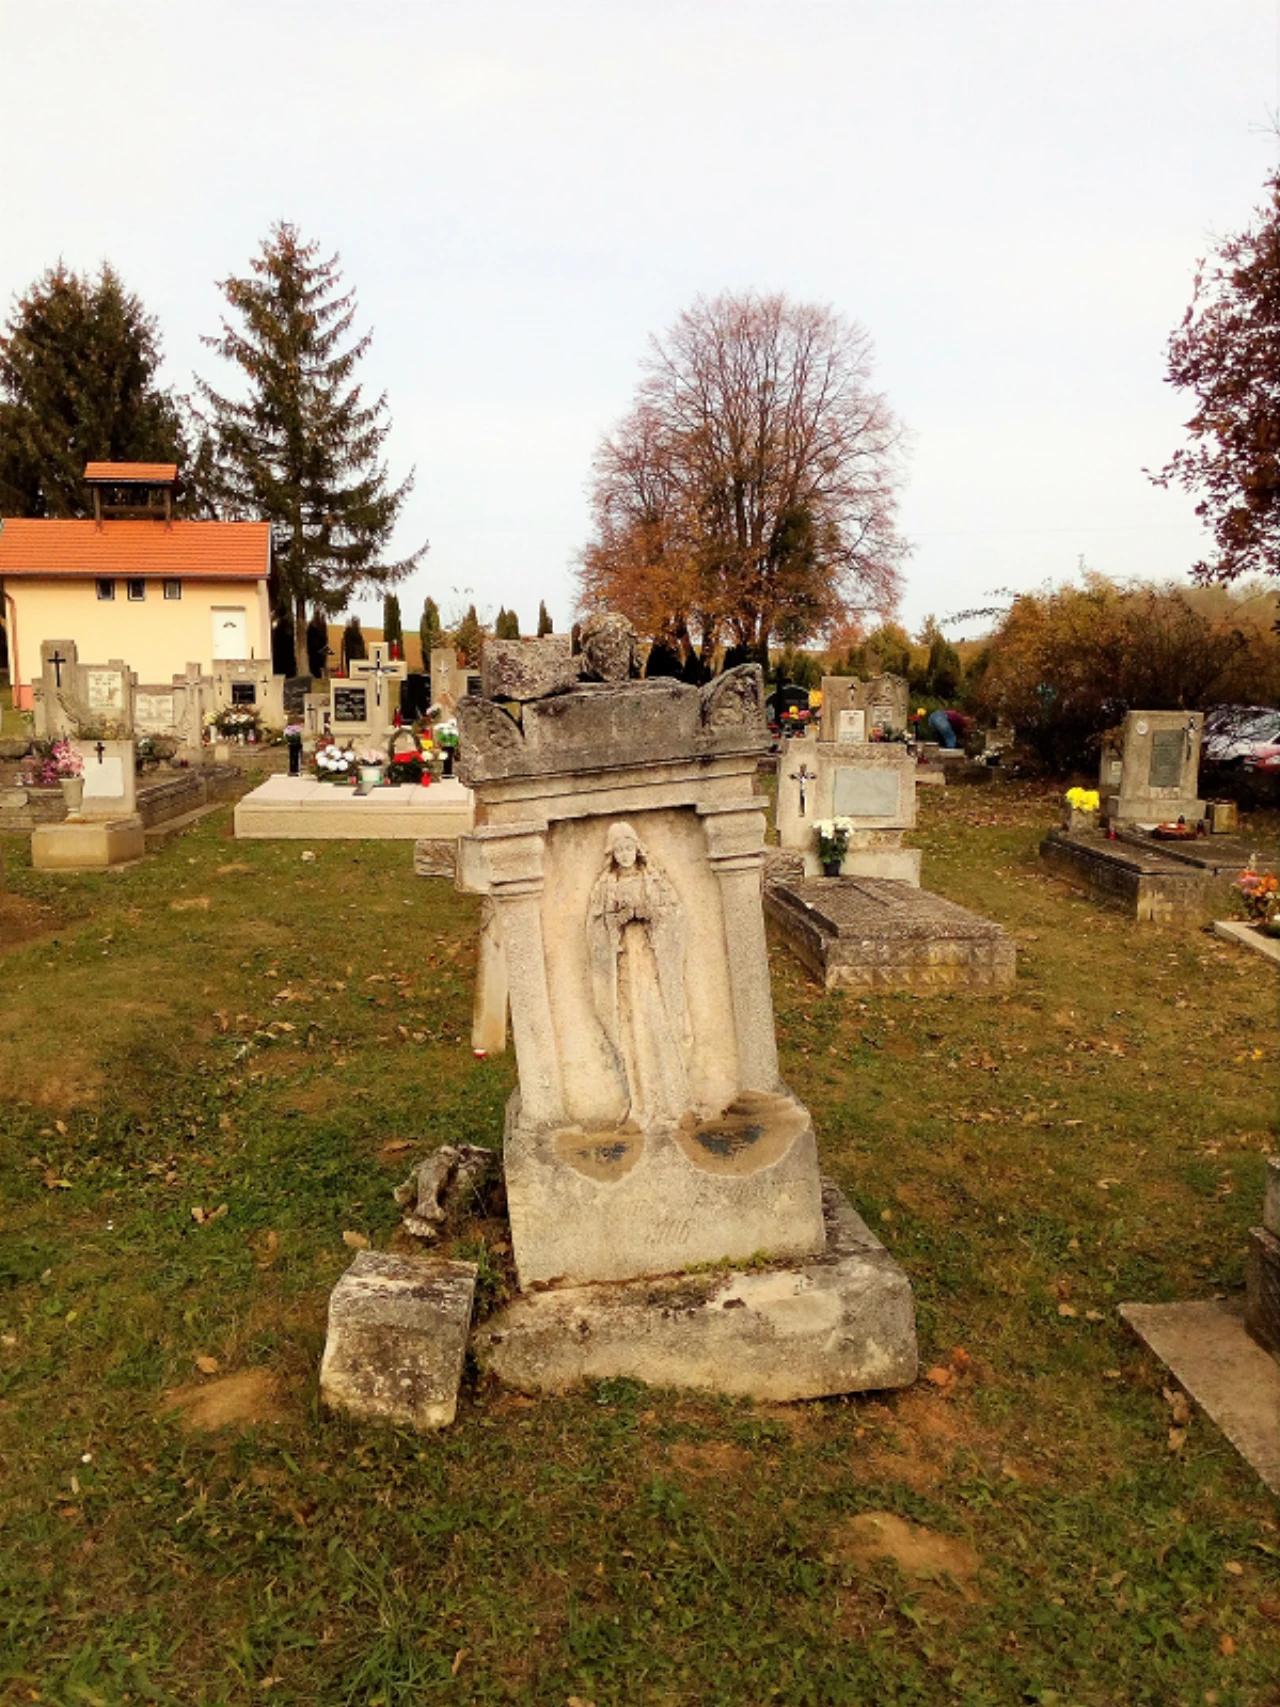 Kereszt, feszület (temetőben) nevü látnivaló 2. számú fényképe